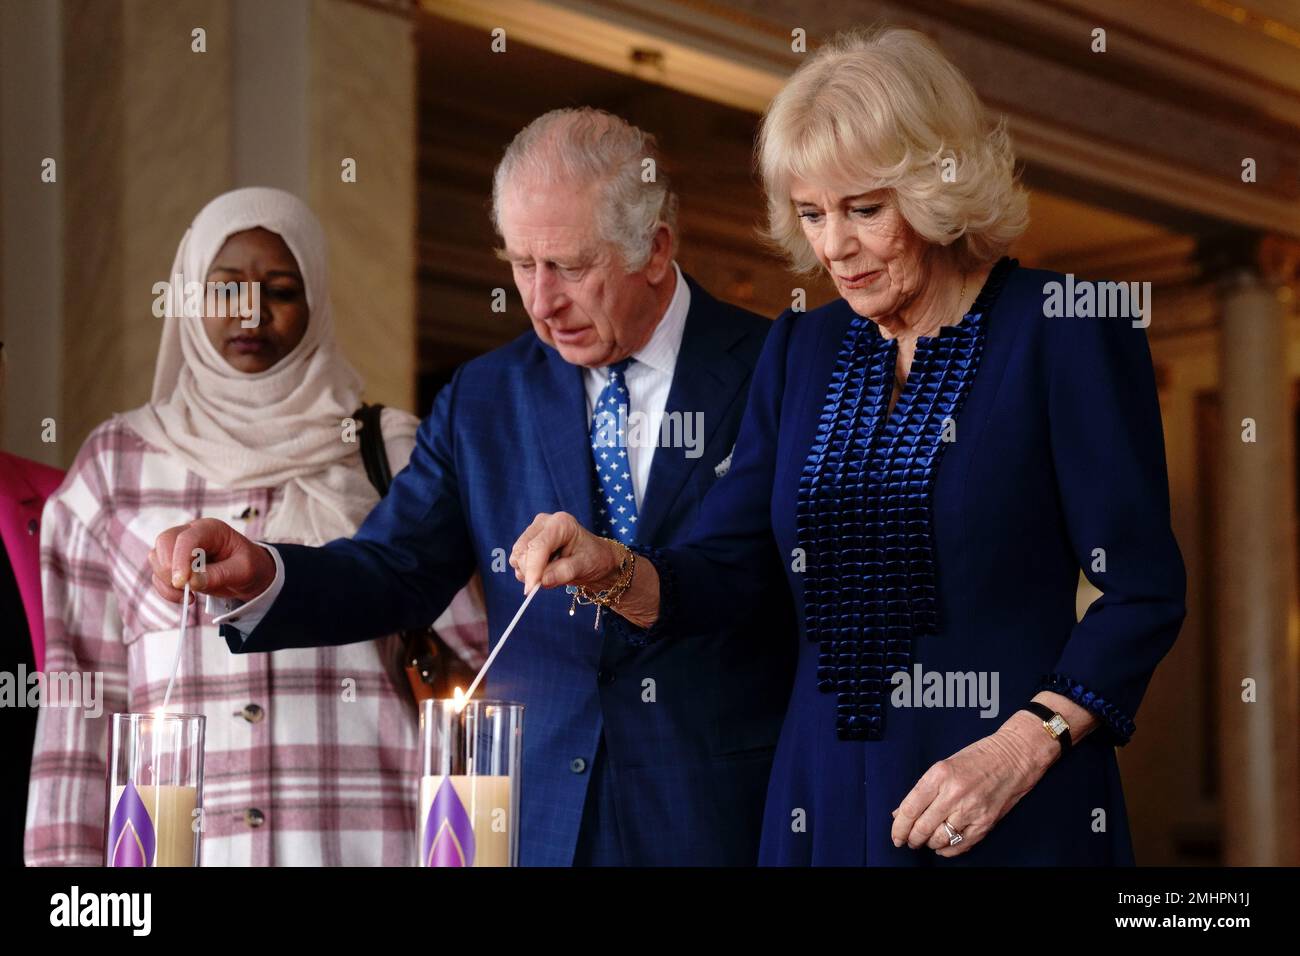 El rey Carlos III y la Reina consorte encienden una vela en el Palacio de Buckingham, Londres, para conmemorar el Día de los Caídos del Holocausto, junto a Amouna Adam, sobreviviente del genocidio de Darfur, y el sobreviviente del Holocausto Dr. Martin Stern (no en la foto). Fecha de la fotografía: Viernes 27 de enero de 2023. Foto de stock